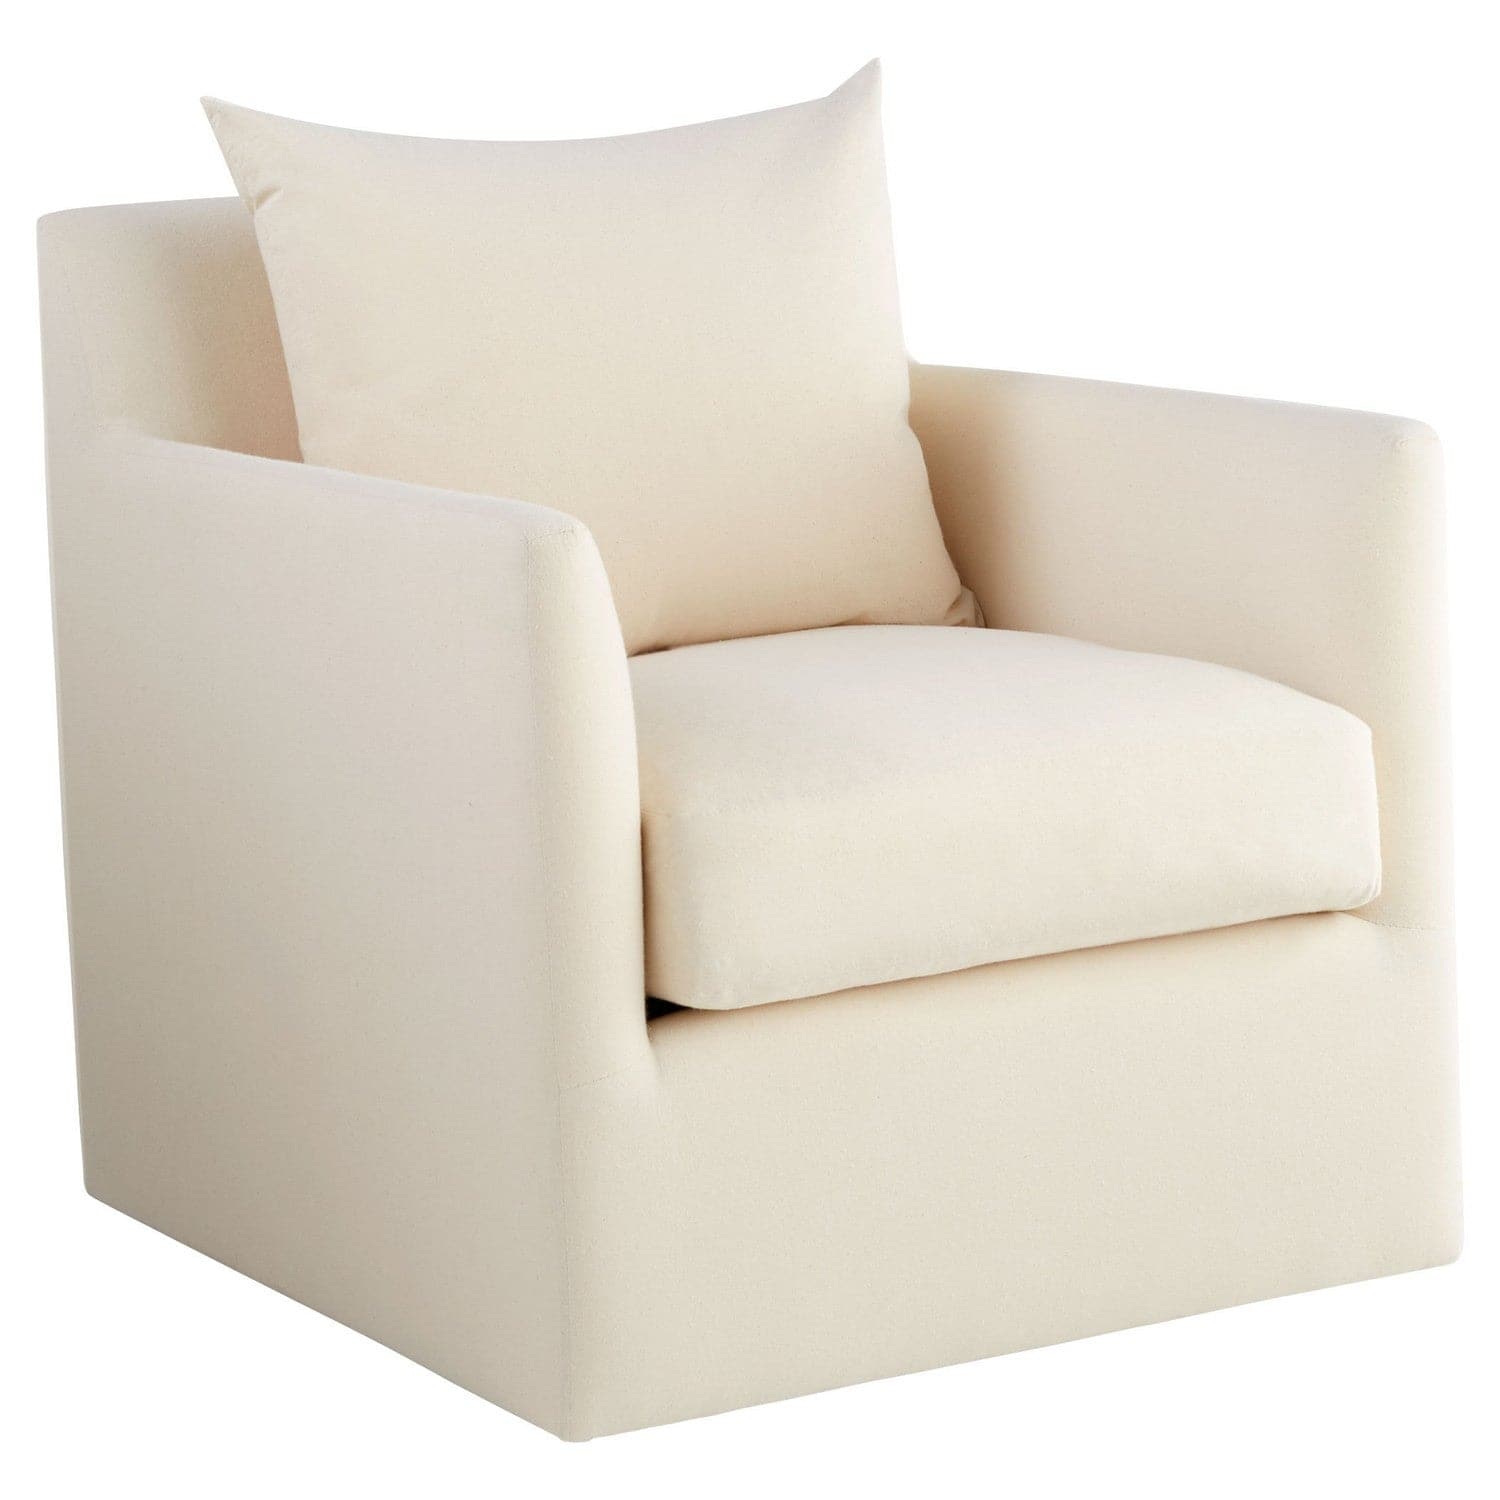 Cyan - 11453 - Chair - Sovente - White - Cream